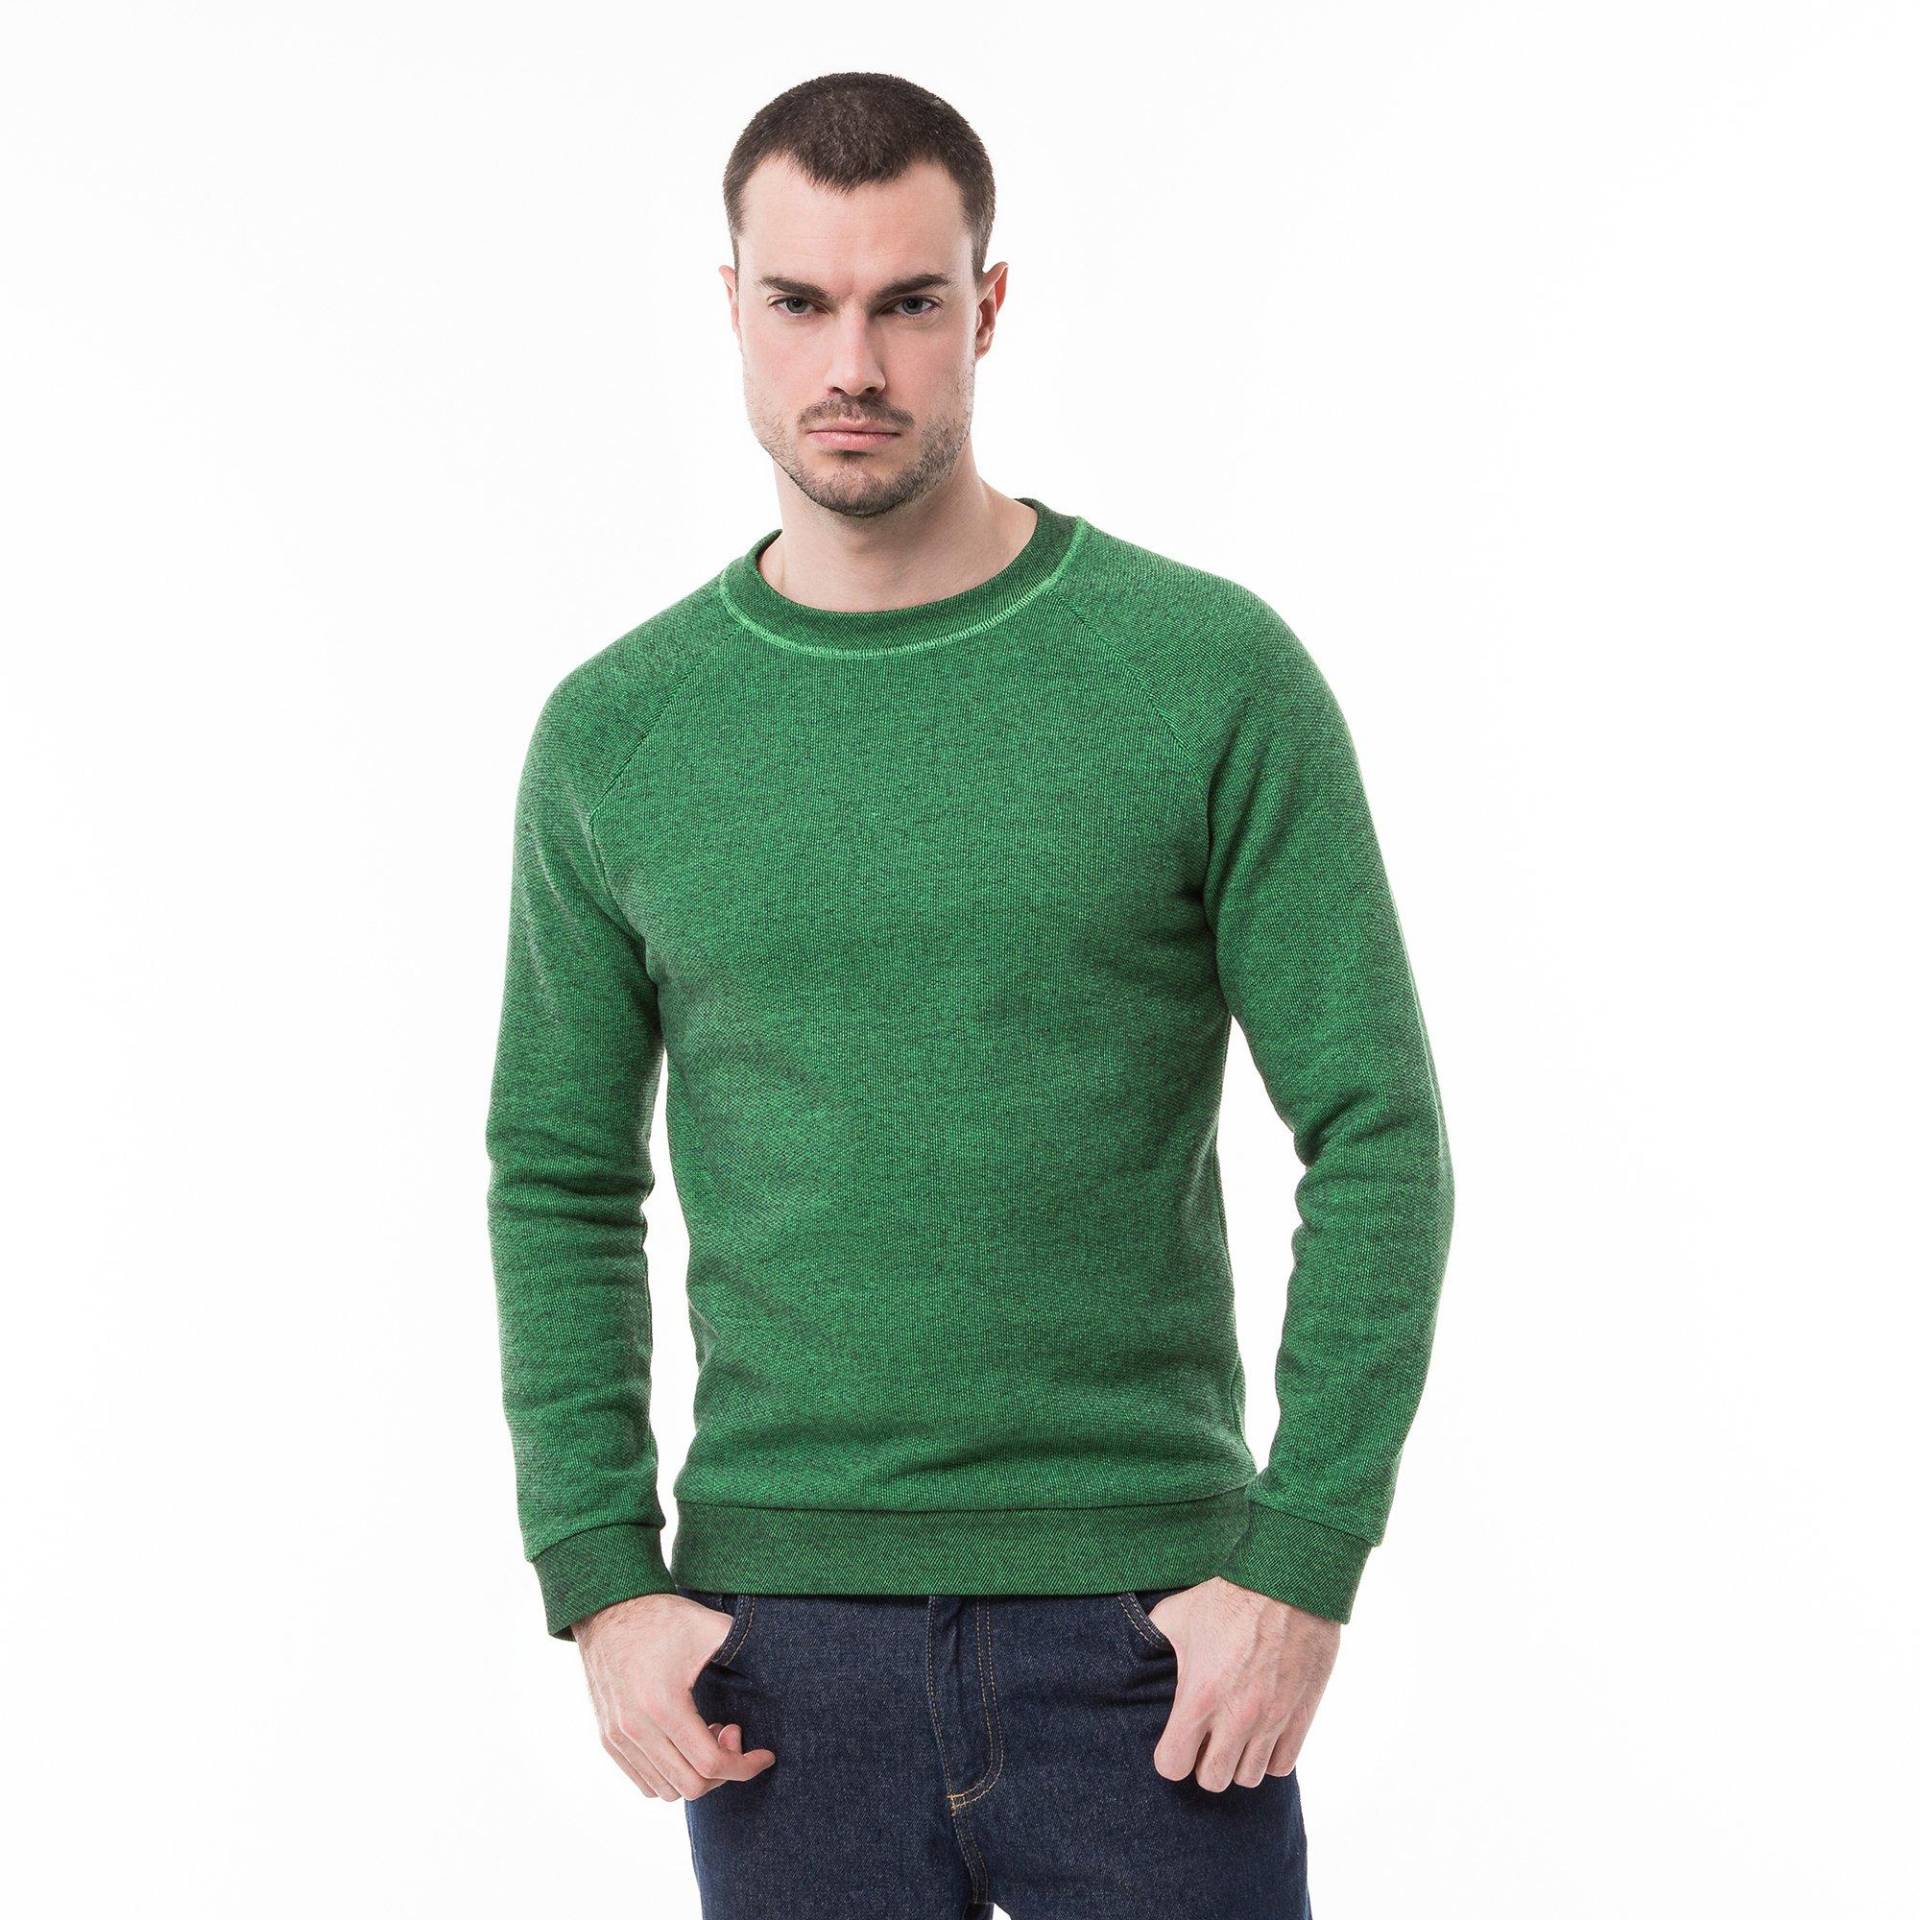 Sweatshirt Herren Grün M von Manor Man